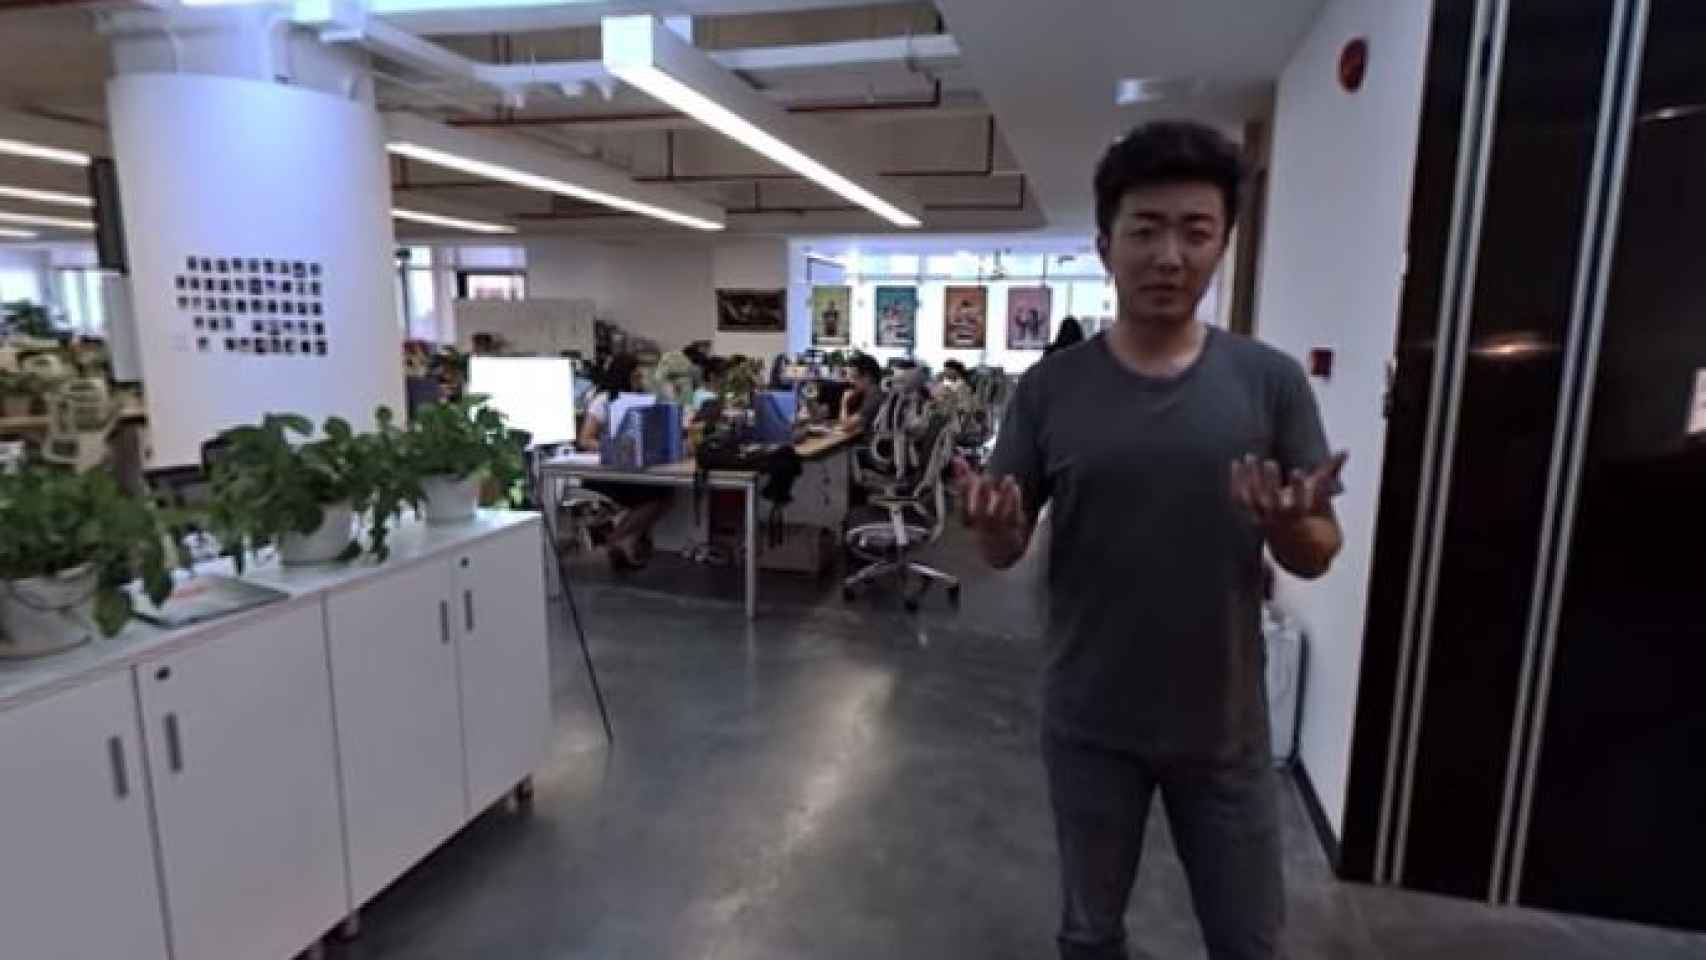 La presentación del OnePlus 2 desde cardboard: esta ha sido mi experiencia